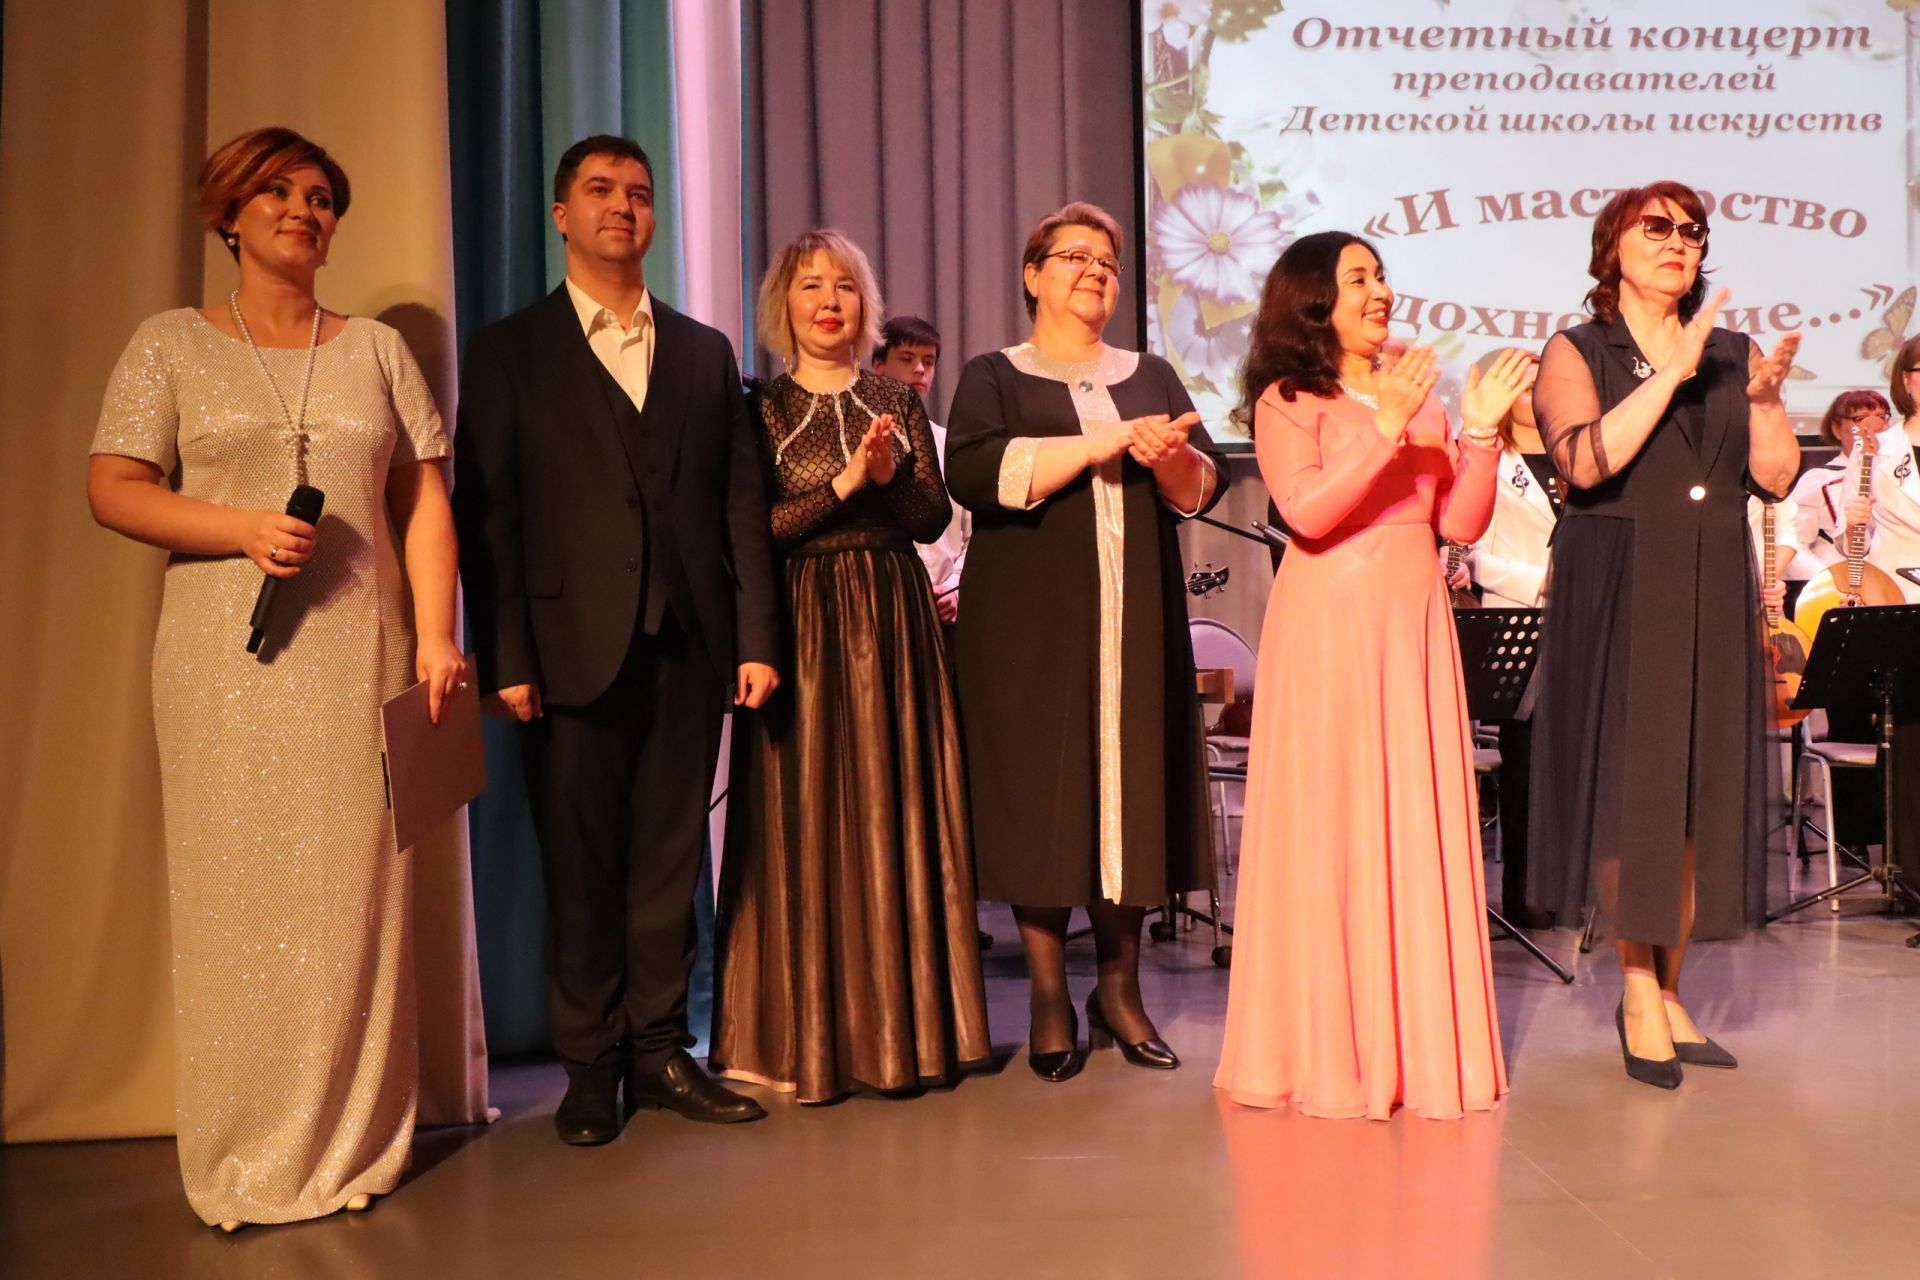 Преподаватели ДШИ Менделеевска устроили для зрителей праздник музыки